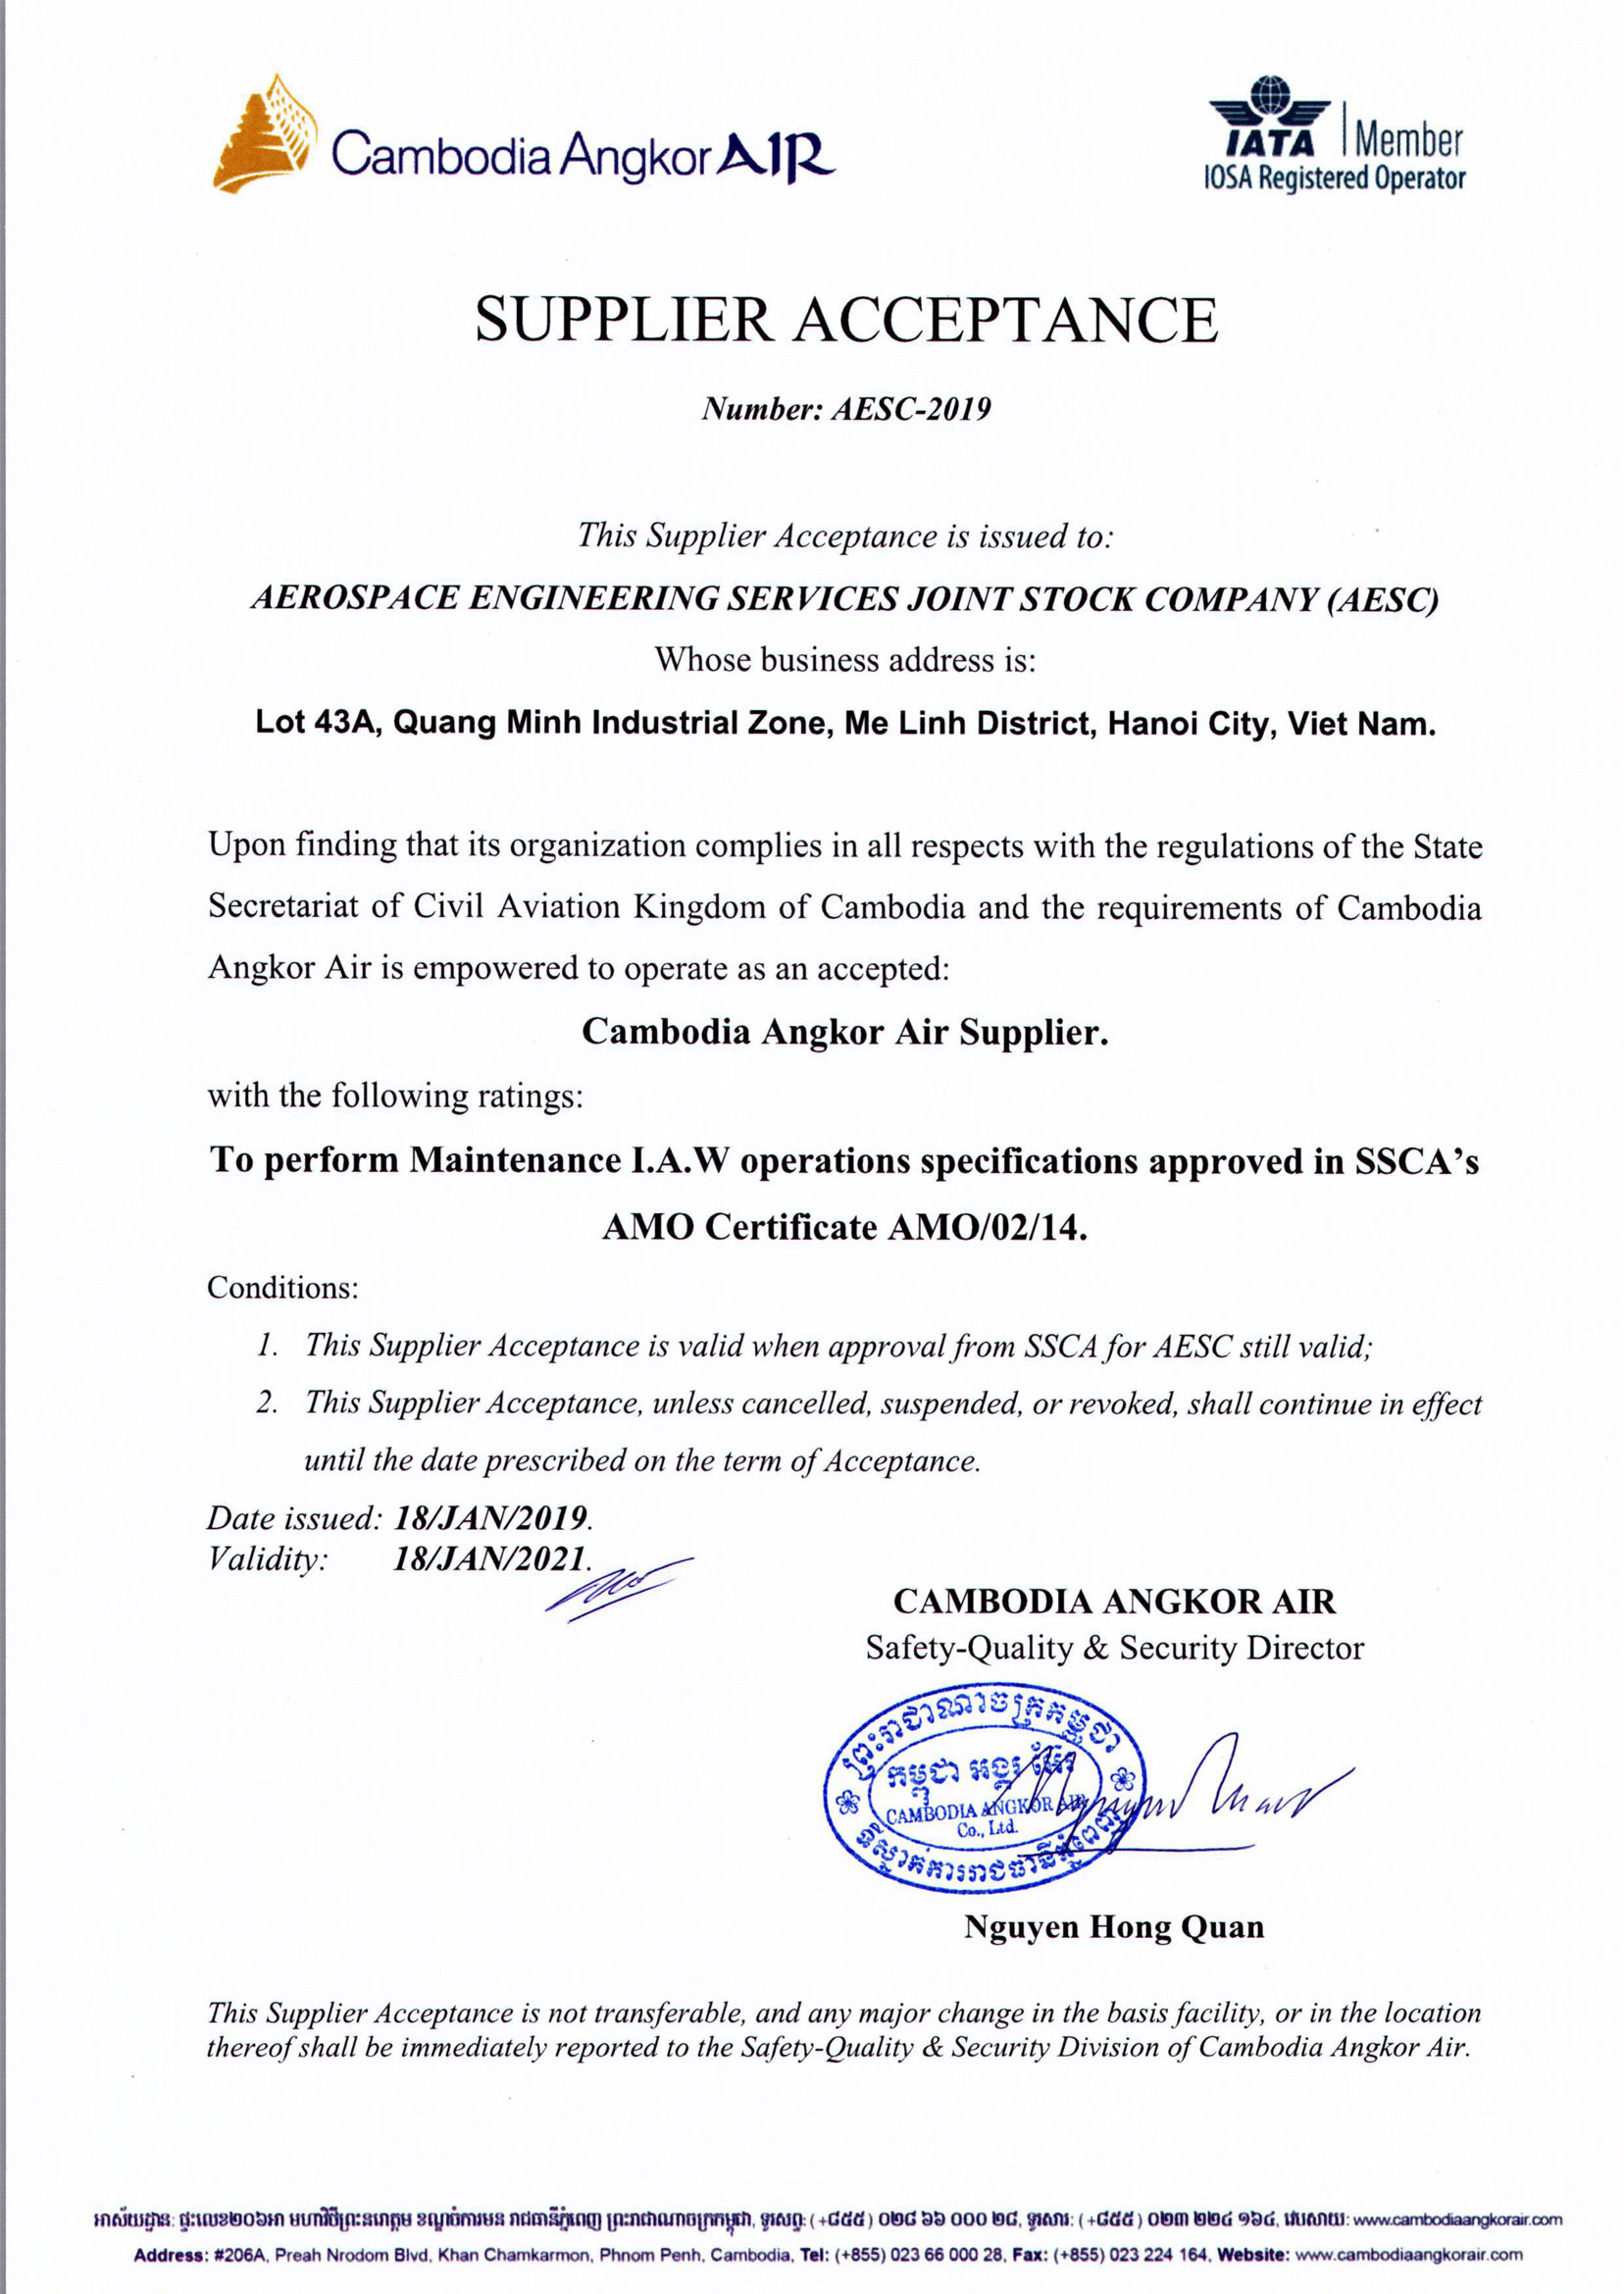 Cambodia Angkor Air Supplier Acceptance